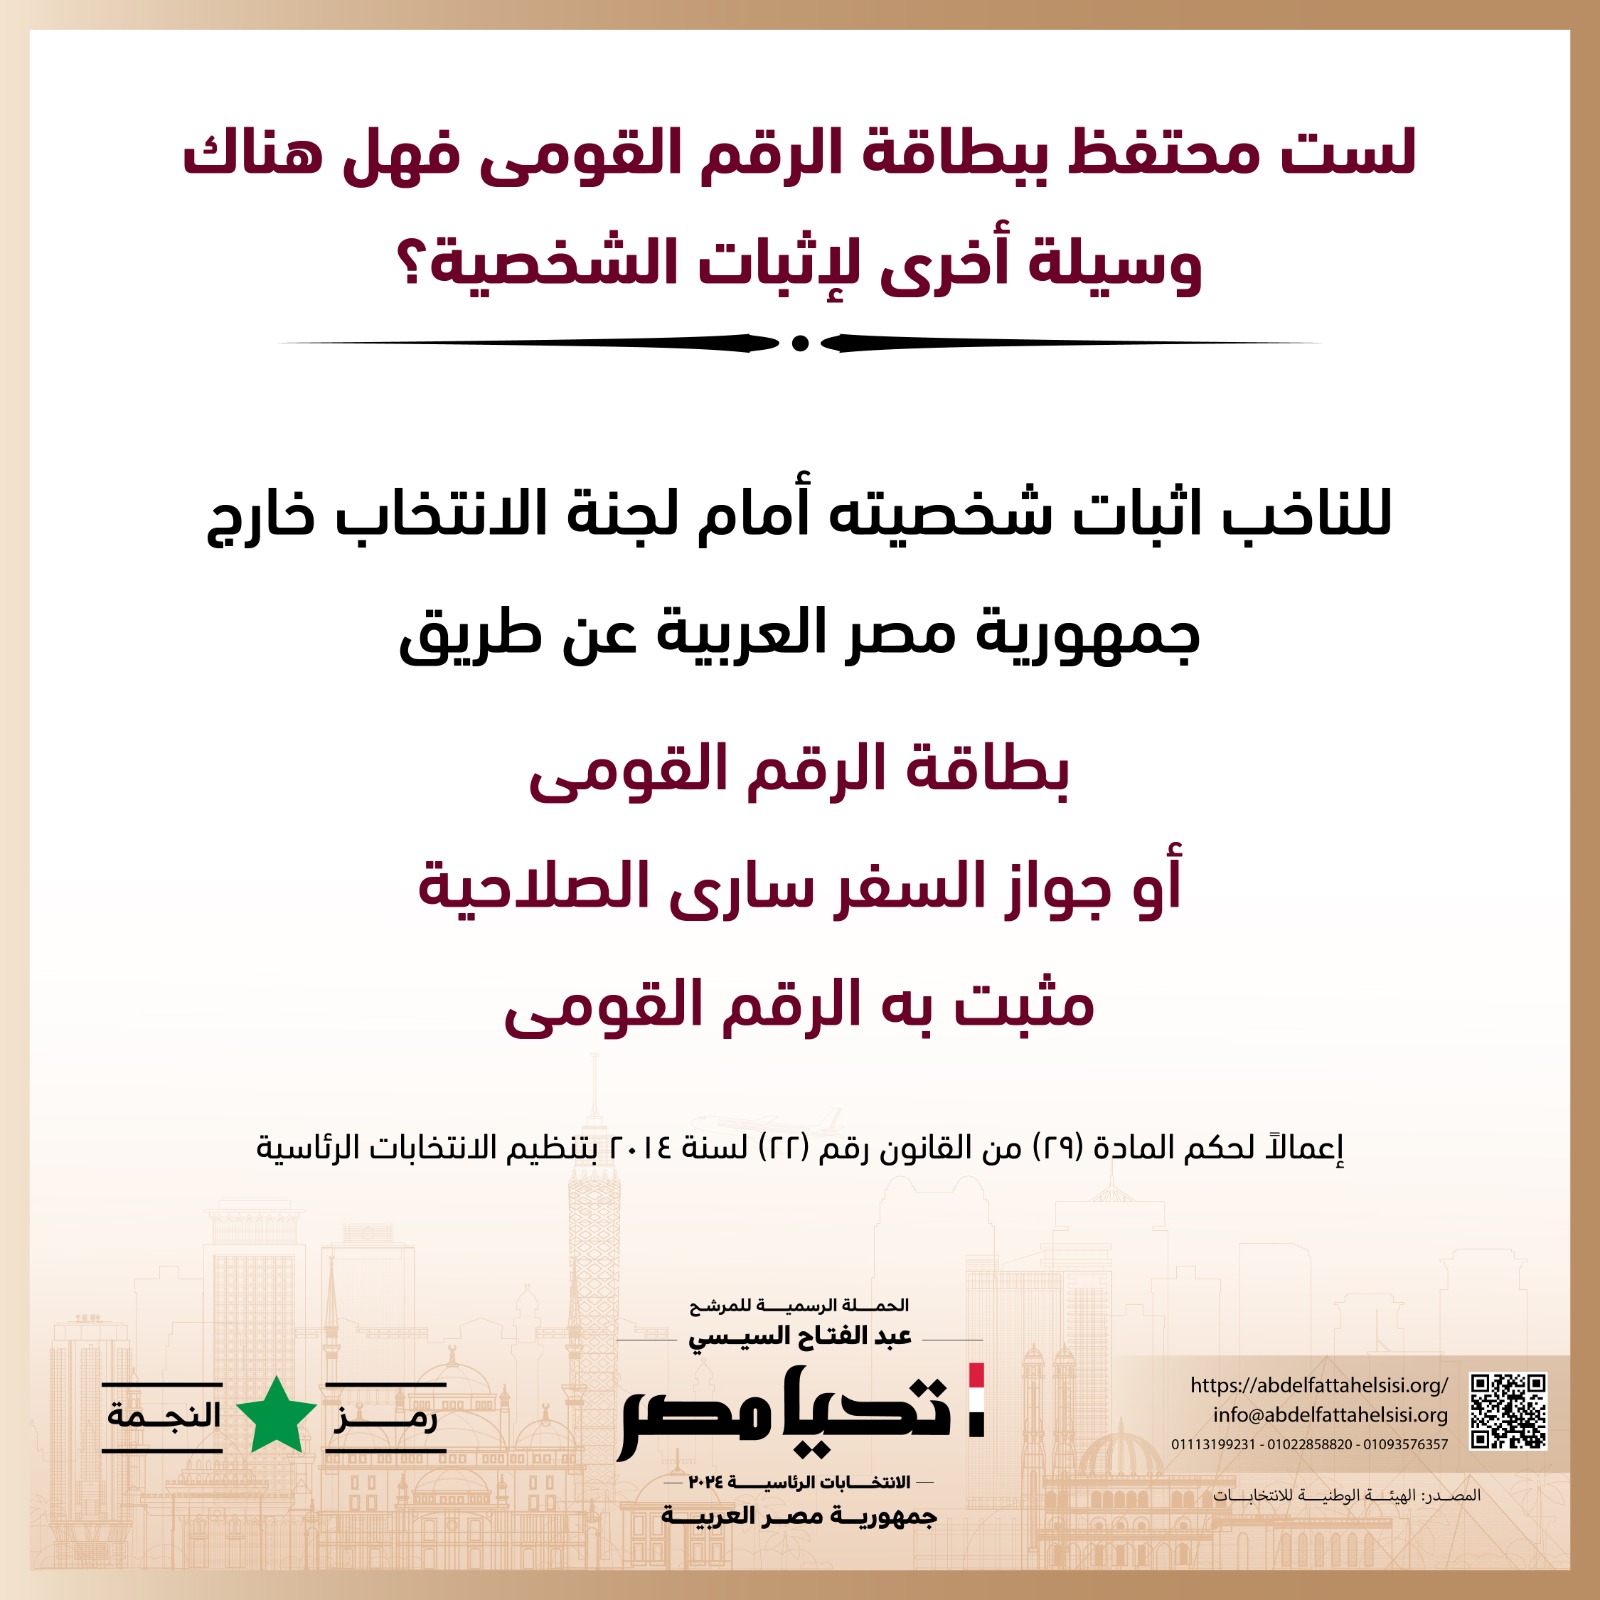 الحملة الرسمية للمرشح عبد الفتاح السيسي  (7)